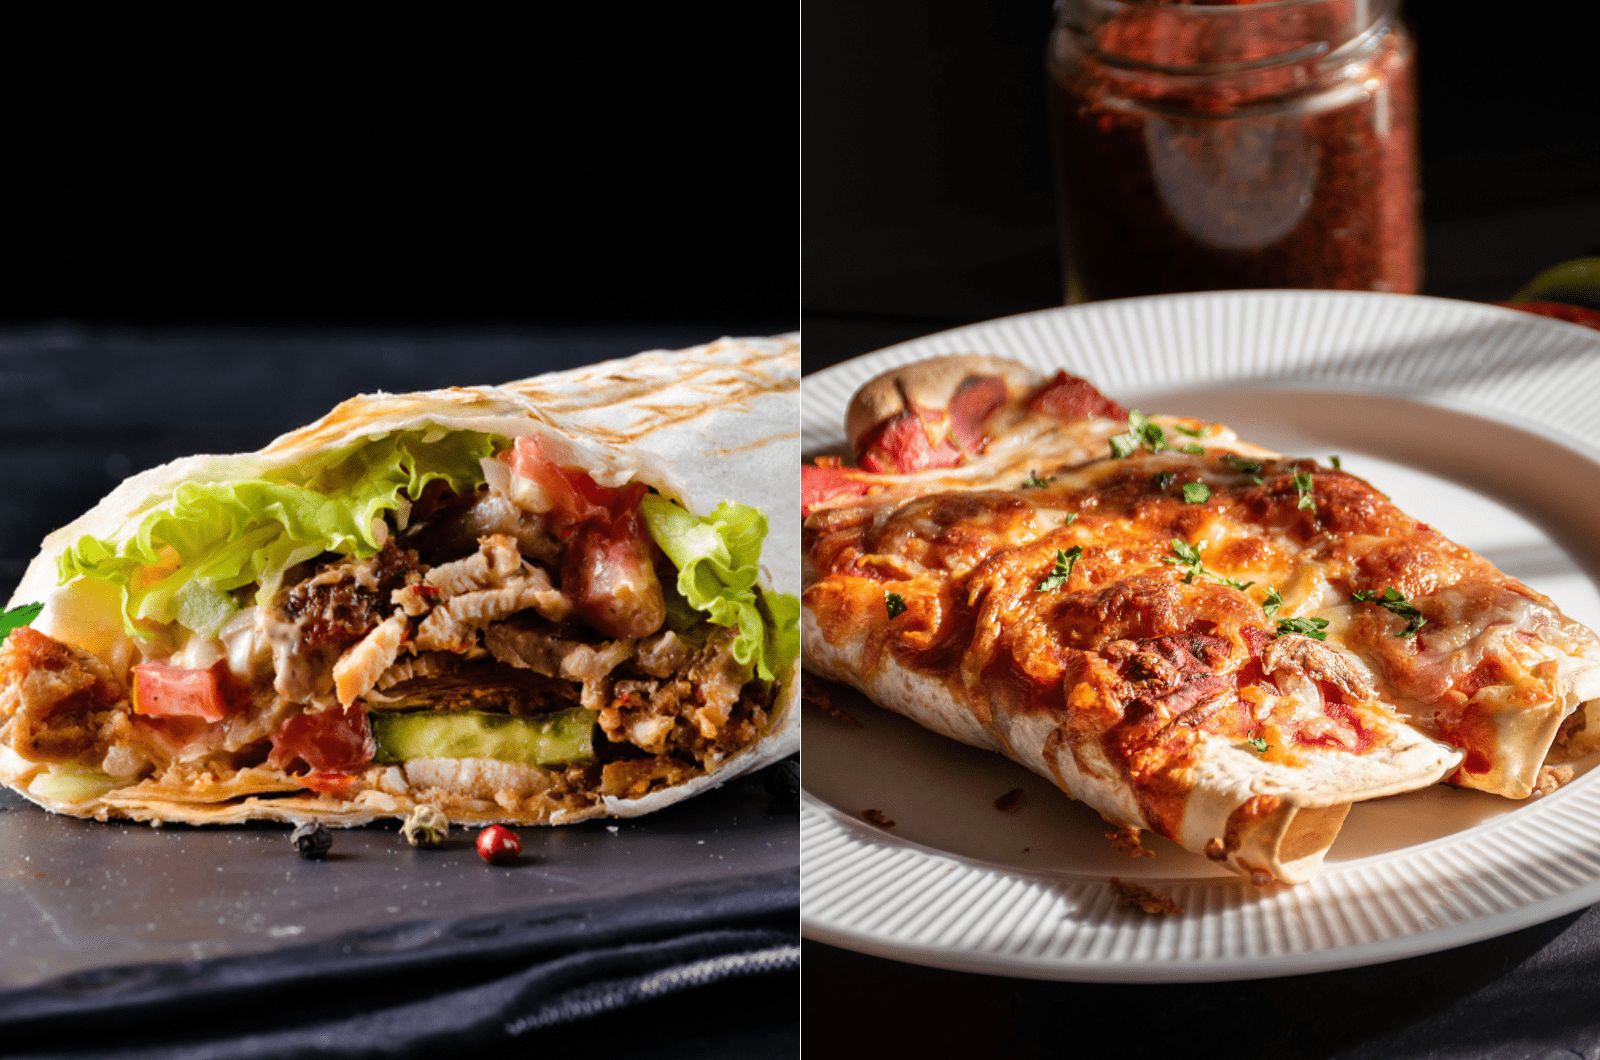 enchilada vs burrito comparison